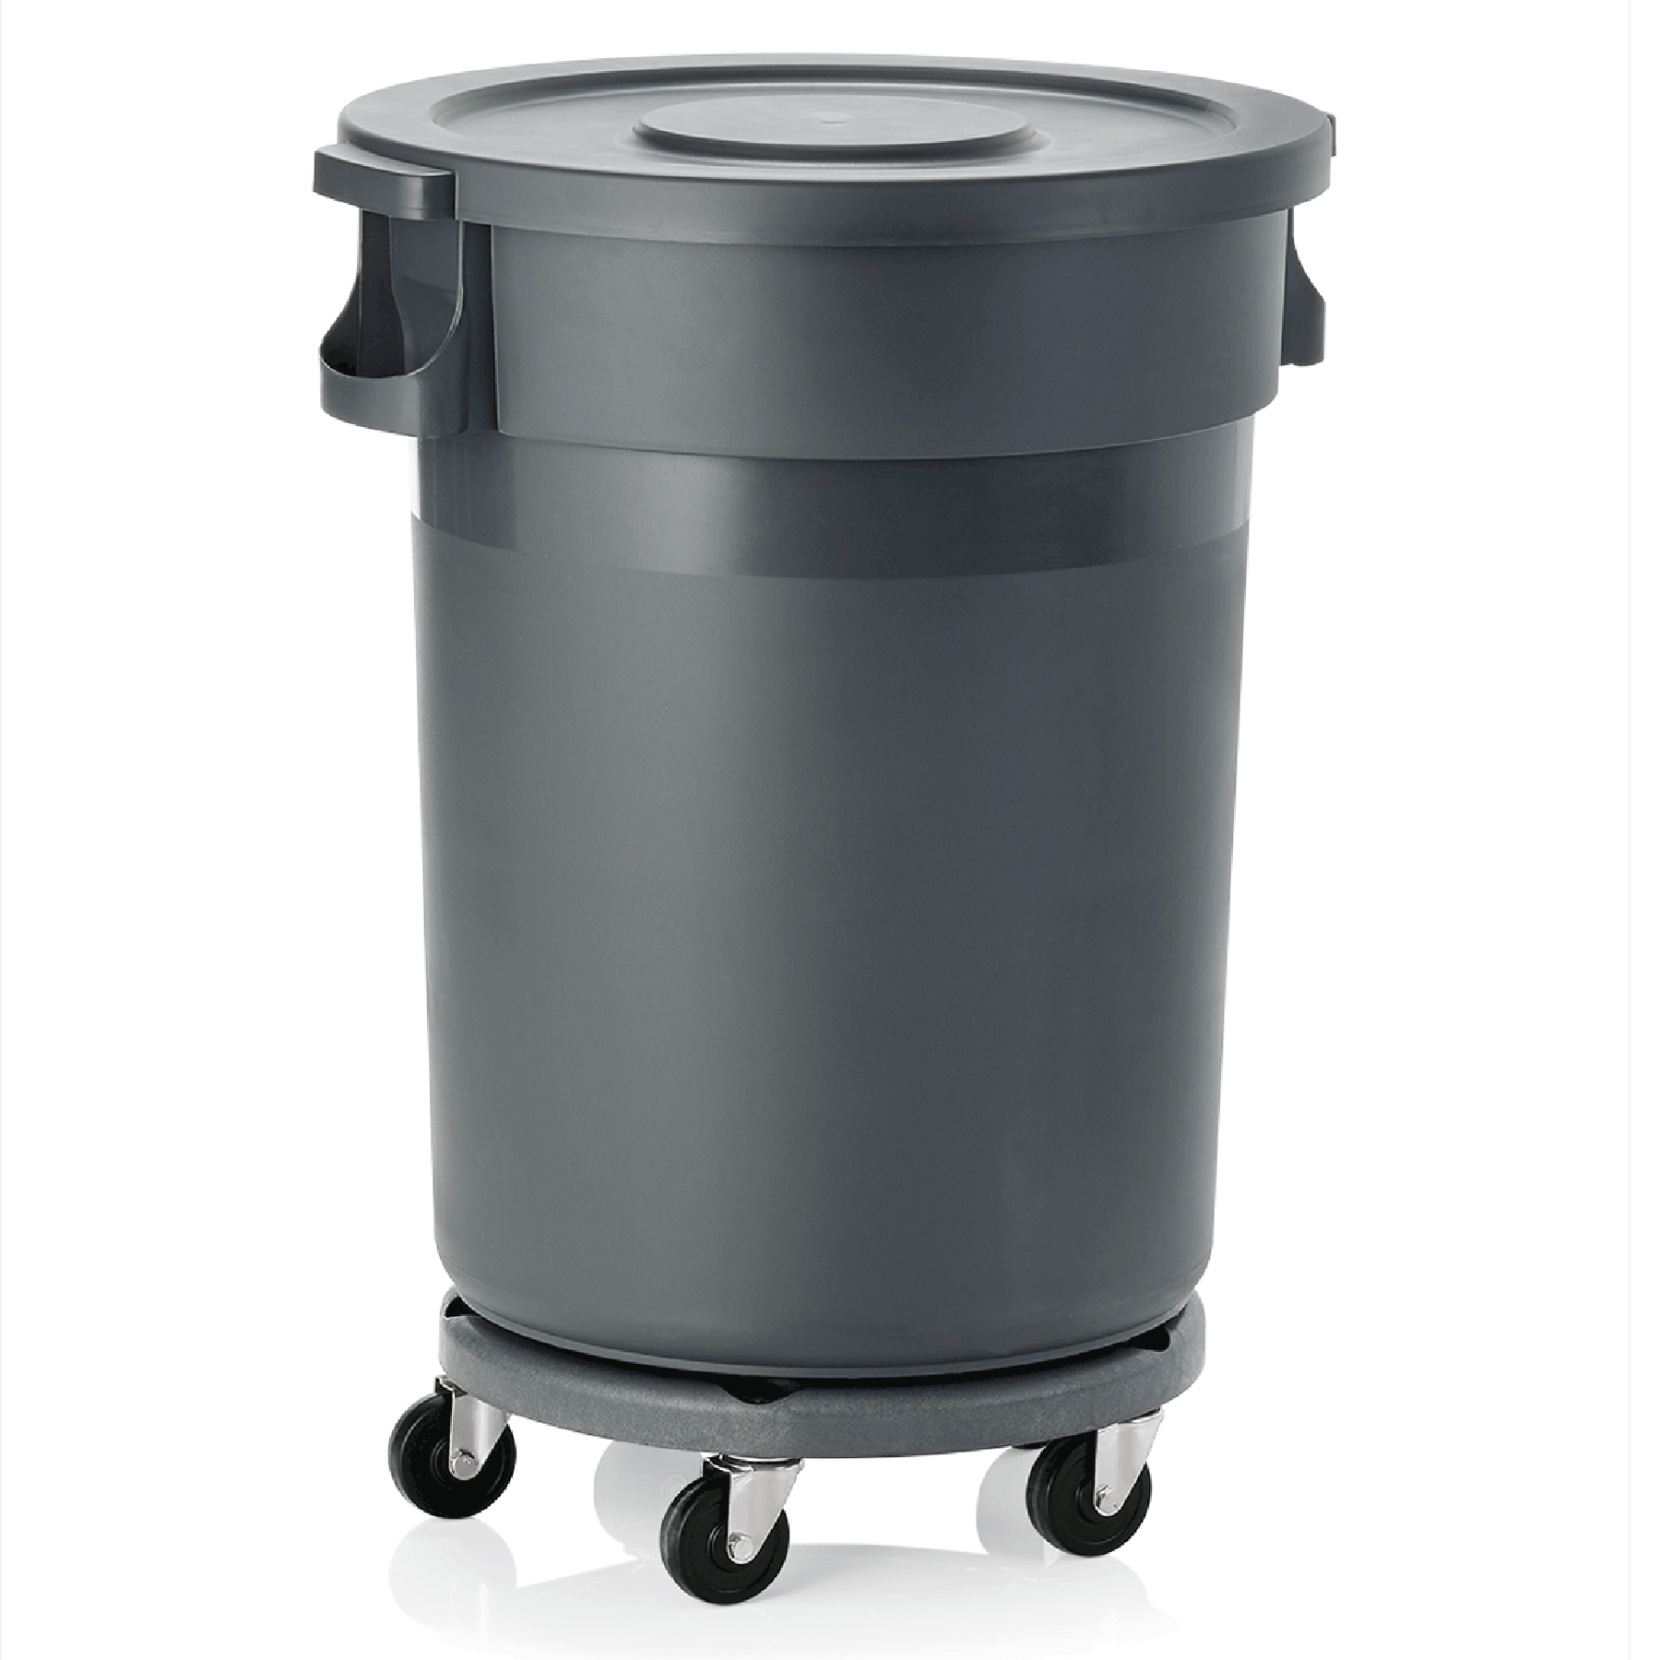 Abfallbehälter mit Deckel & Rädern, 120 ltr., Polypropylen, grau